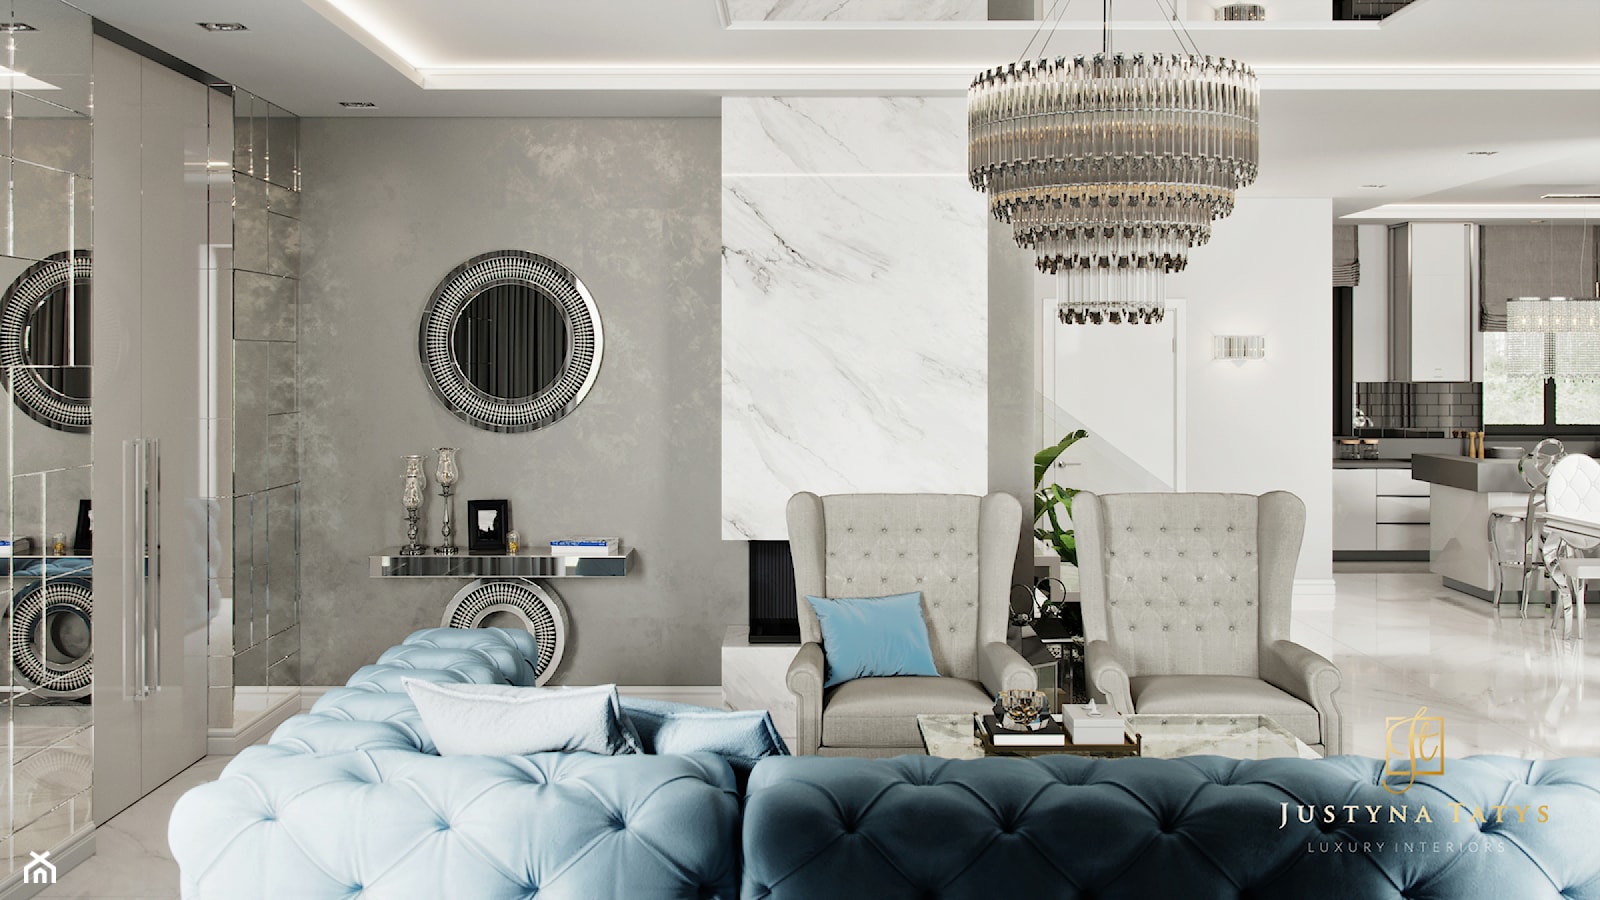 Rezydencja pod Warszawą - salon w stylu New York Glamour. - zdjęcie od JUSTYNA TATYS LUXURY INTERIORS - Homebook